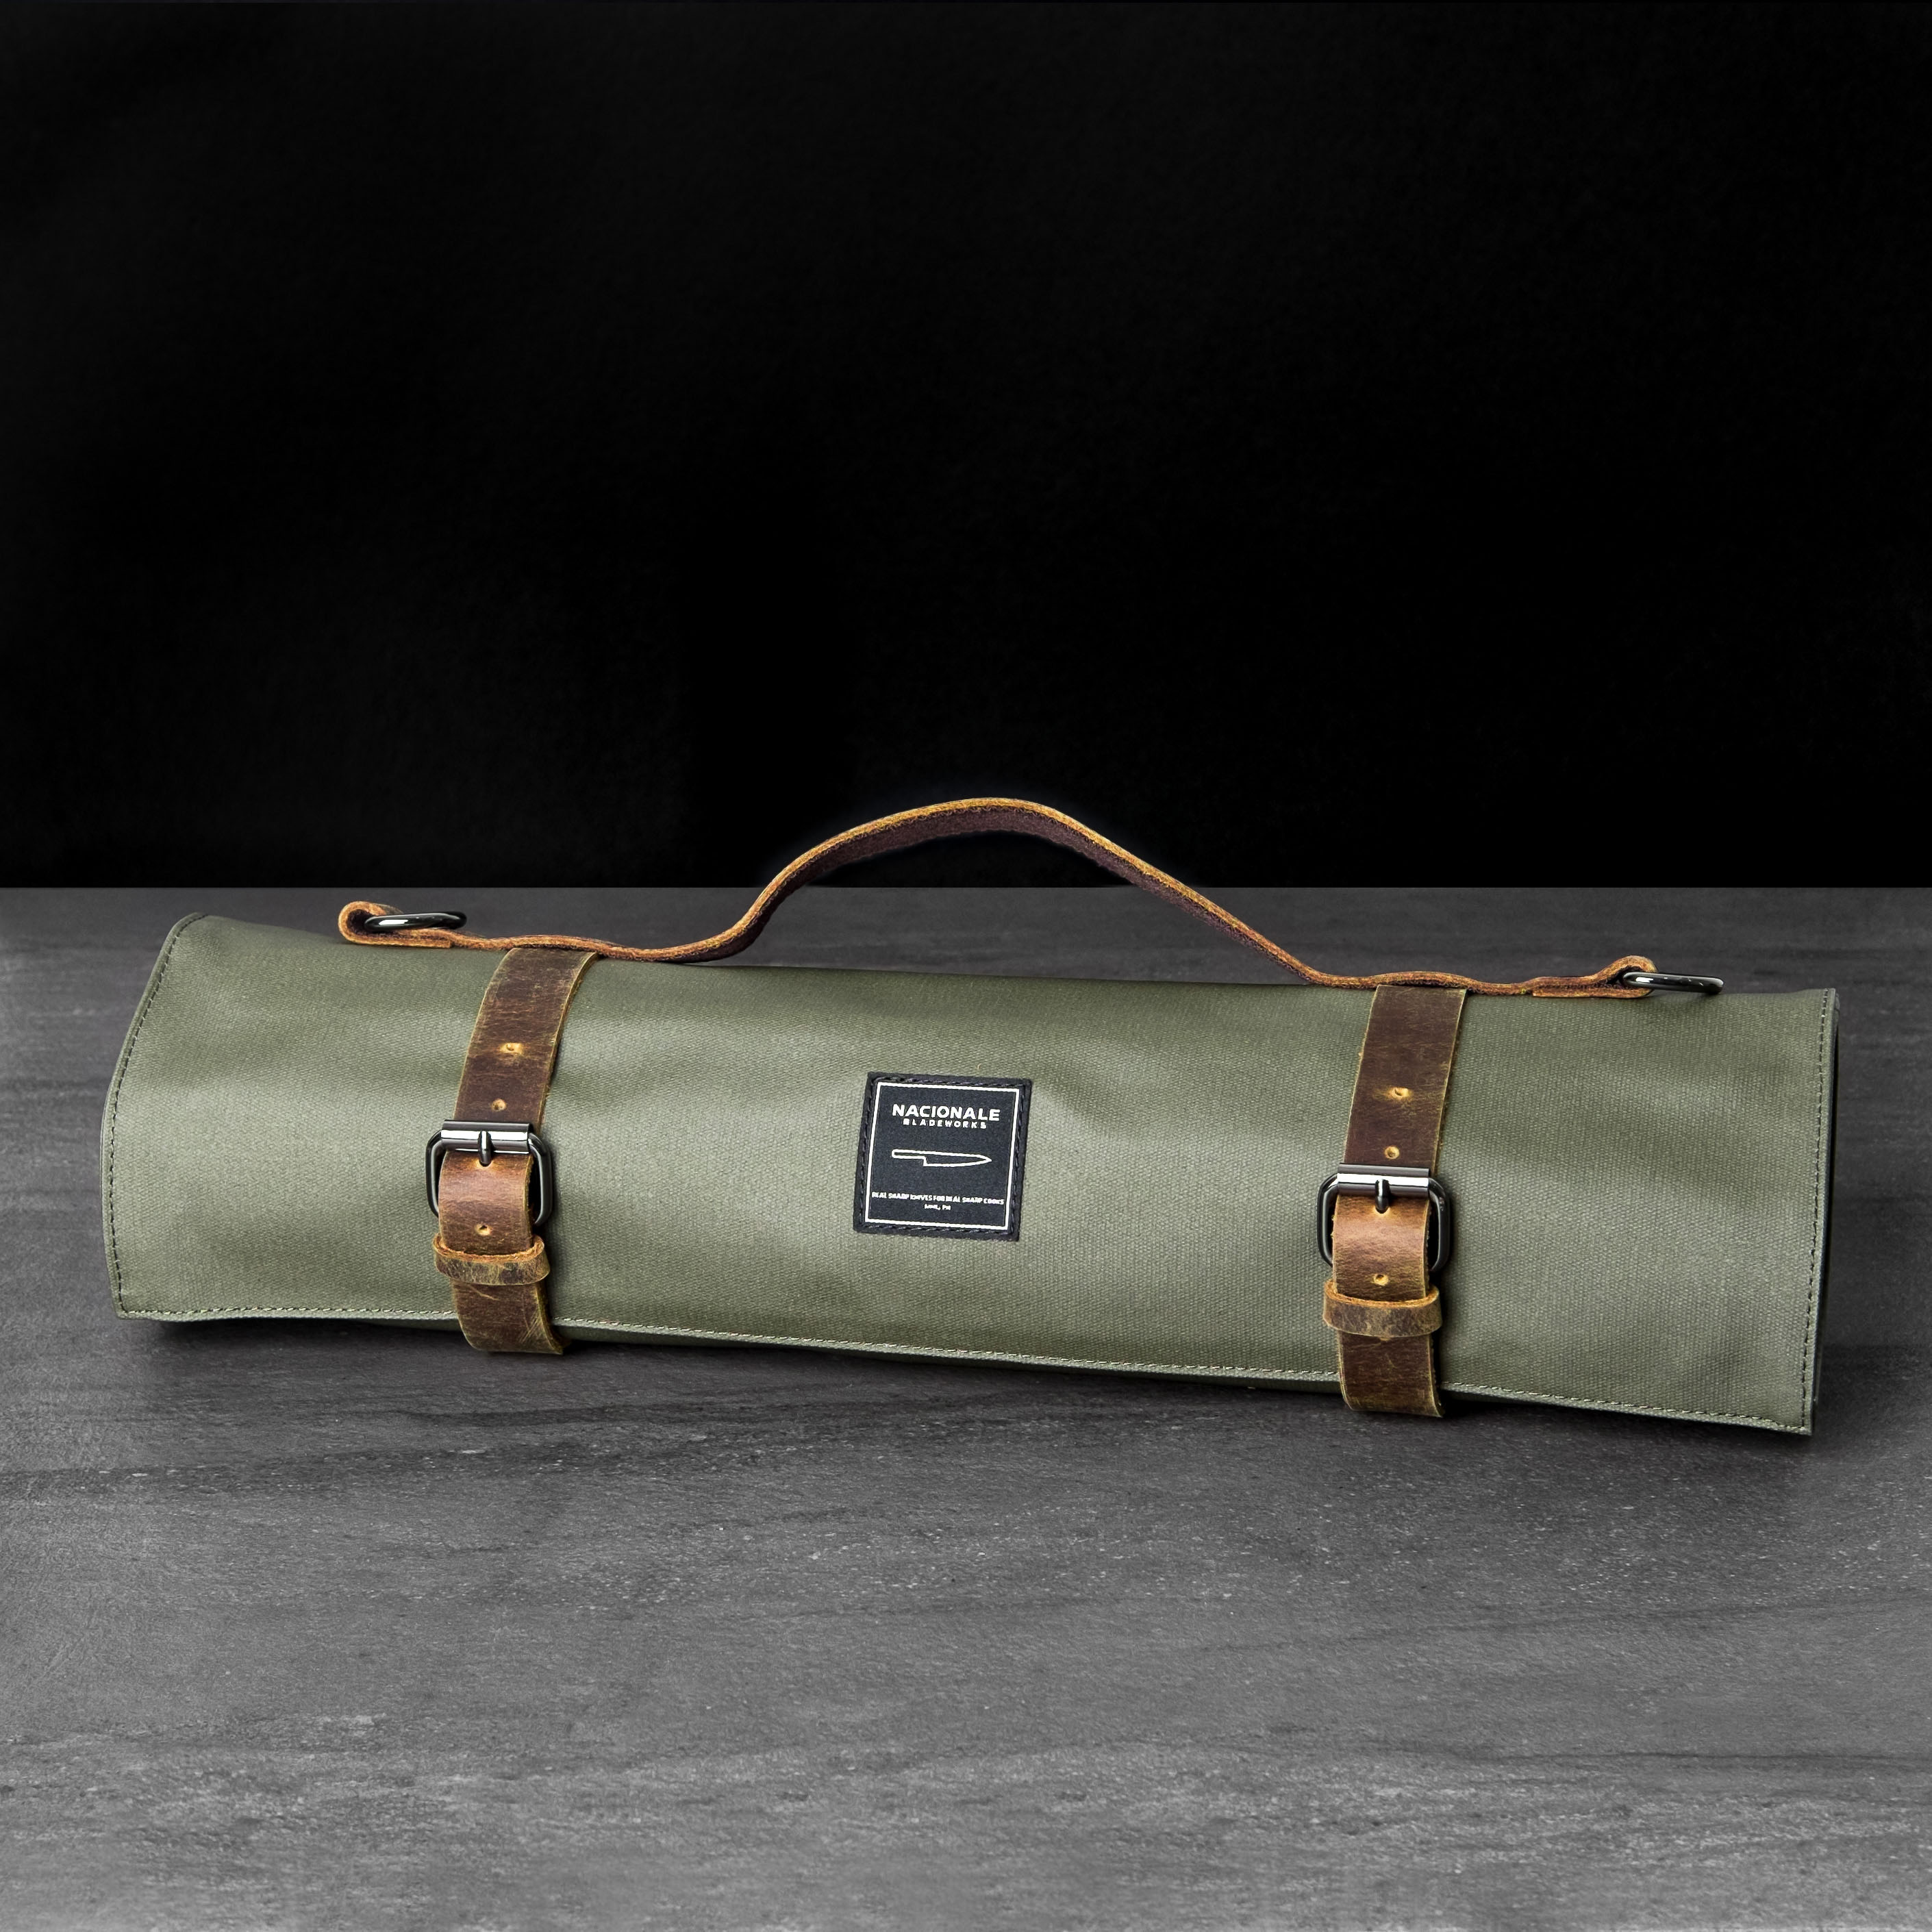 Army Green Knife Bag (Water-Resistant) - Nacionale Bladeworks